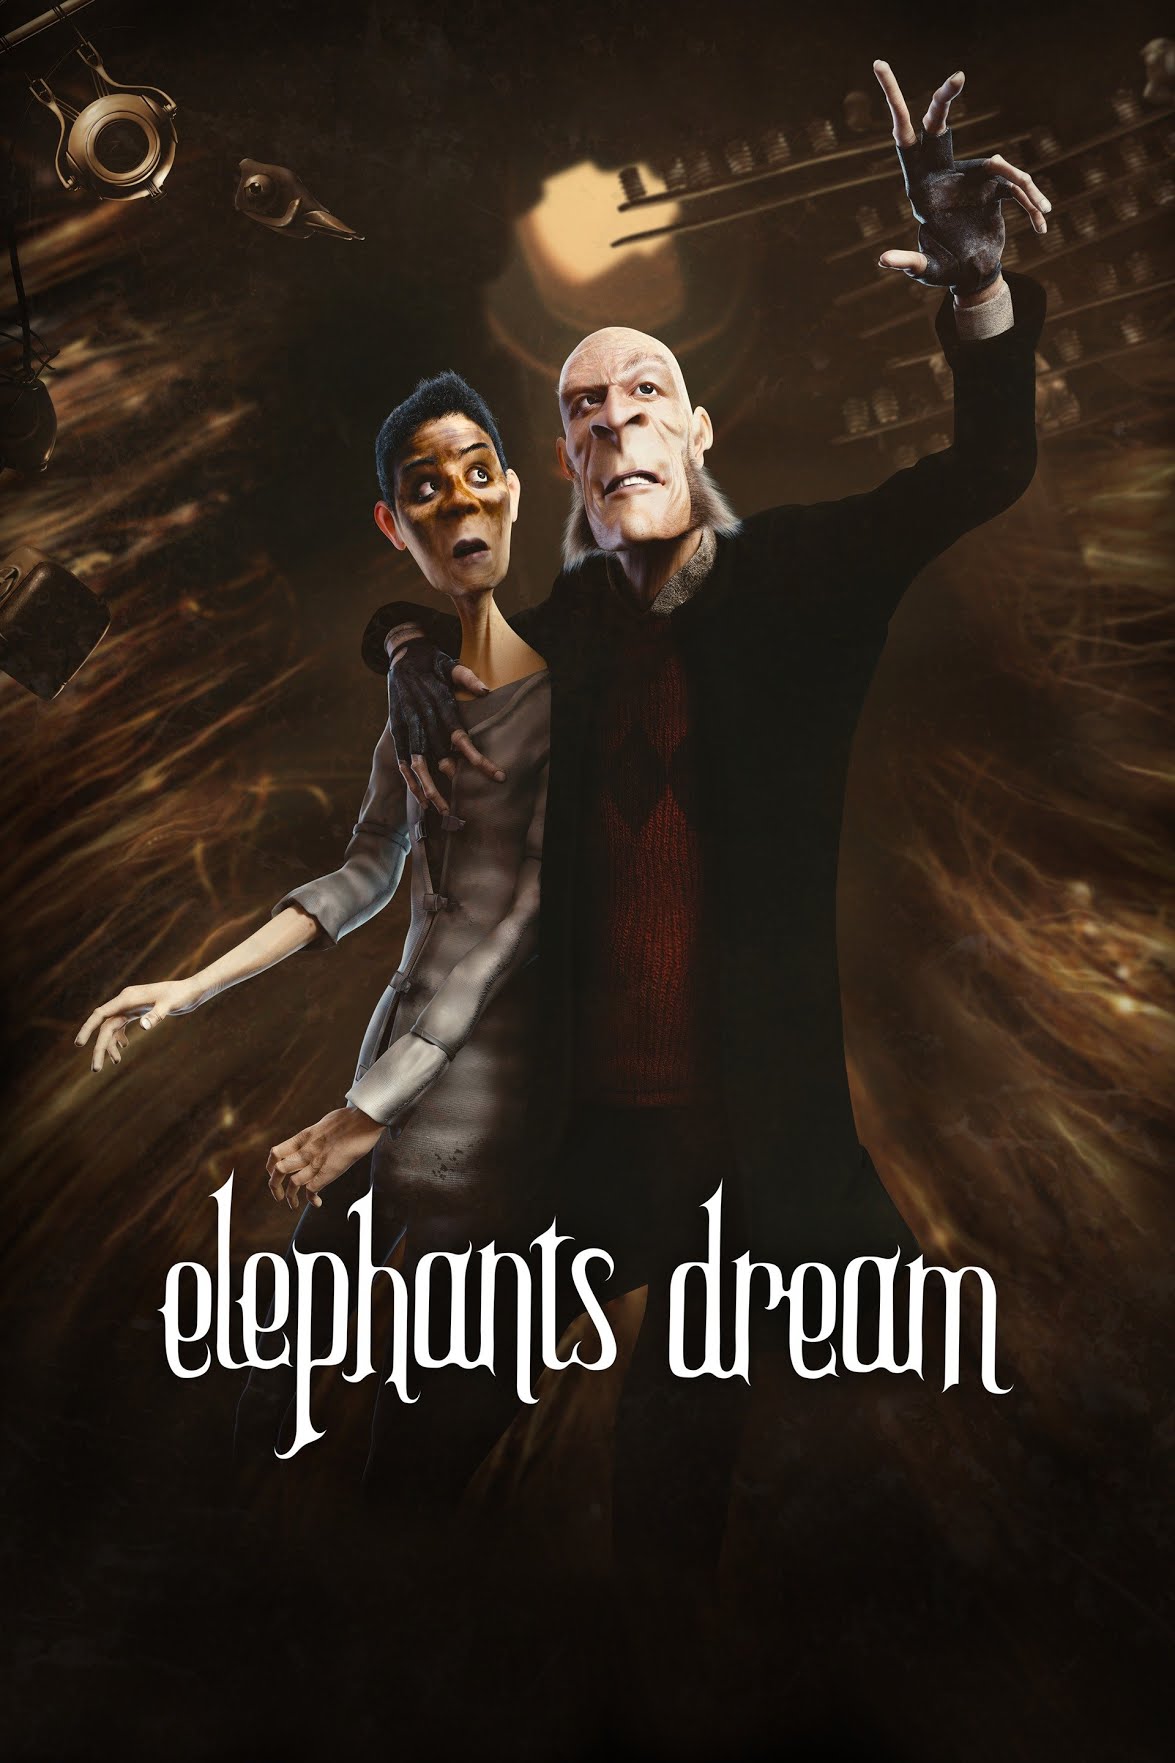 دانلود صوت دوبله فیلم Elephants Dream